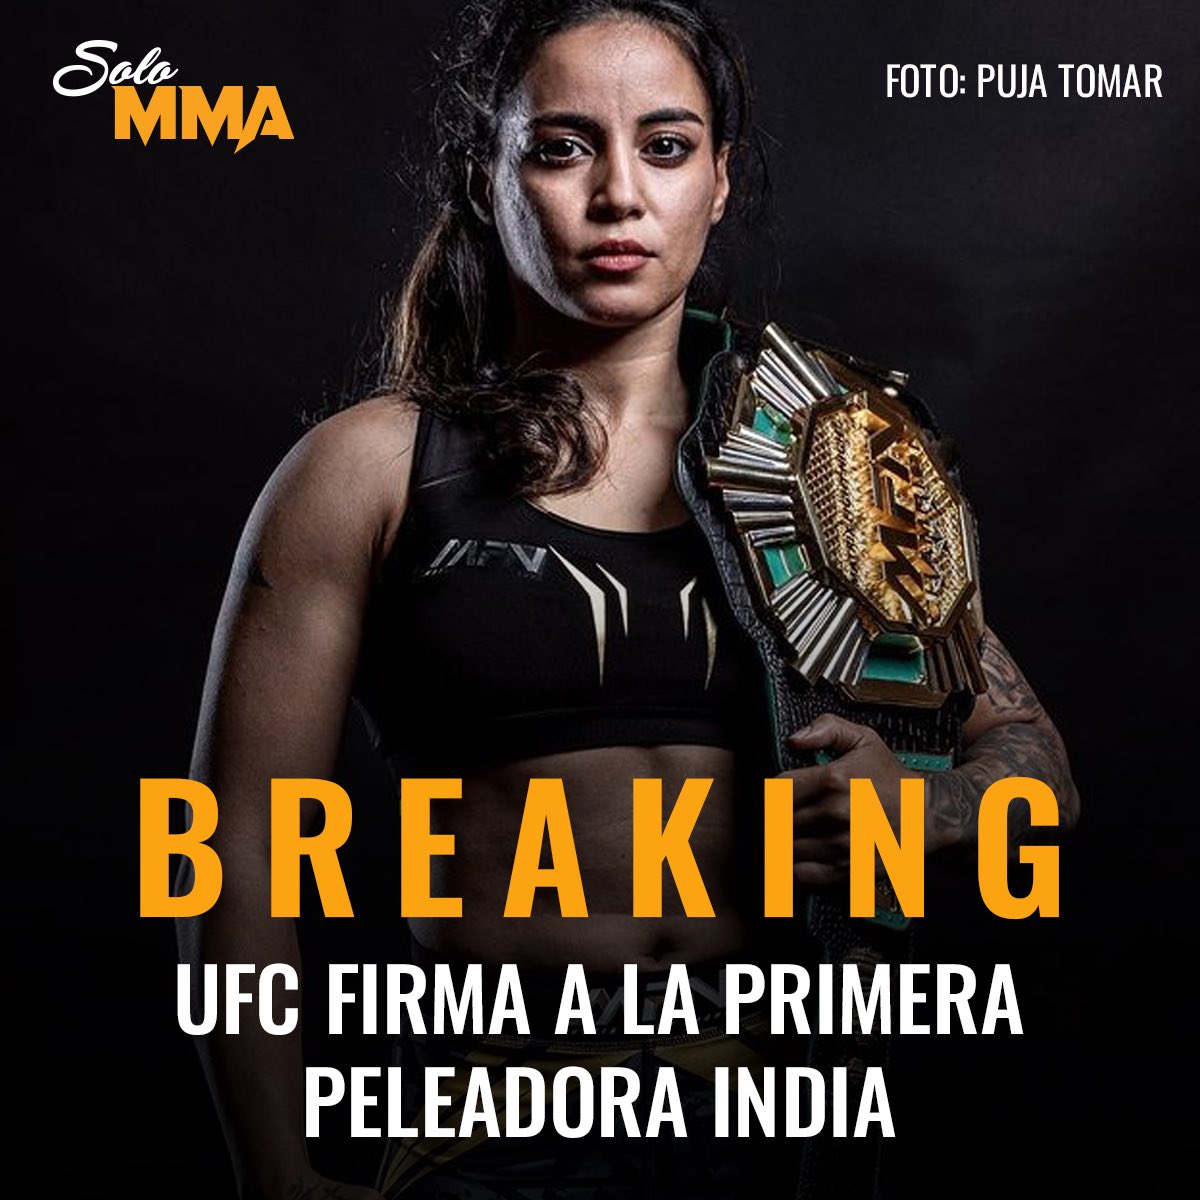 🔥🔥 UFC firma a Puja Tomar, primera peleadora India en la empresa, campeona de la empresa MFN, tiene un récord de 8-4 y cuenta con una racha de 4 victorias al hilo.

Tomar hará su debut ante Rayanne Amanda en #UFCLouisville el 8 de junio en las 115 lbs.